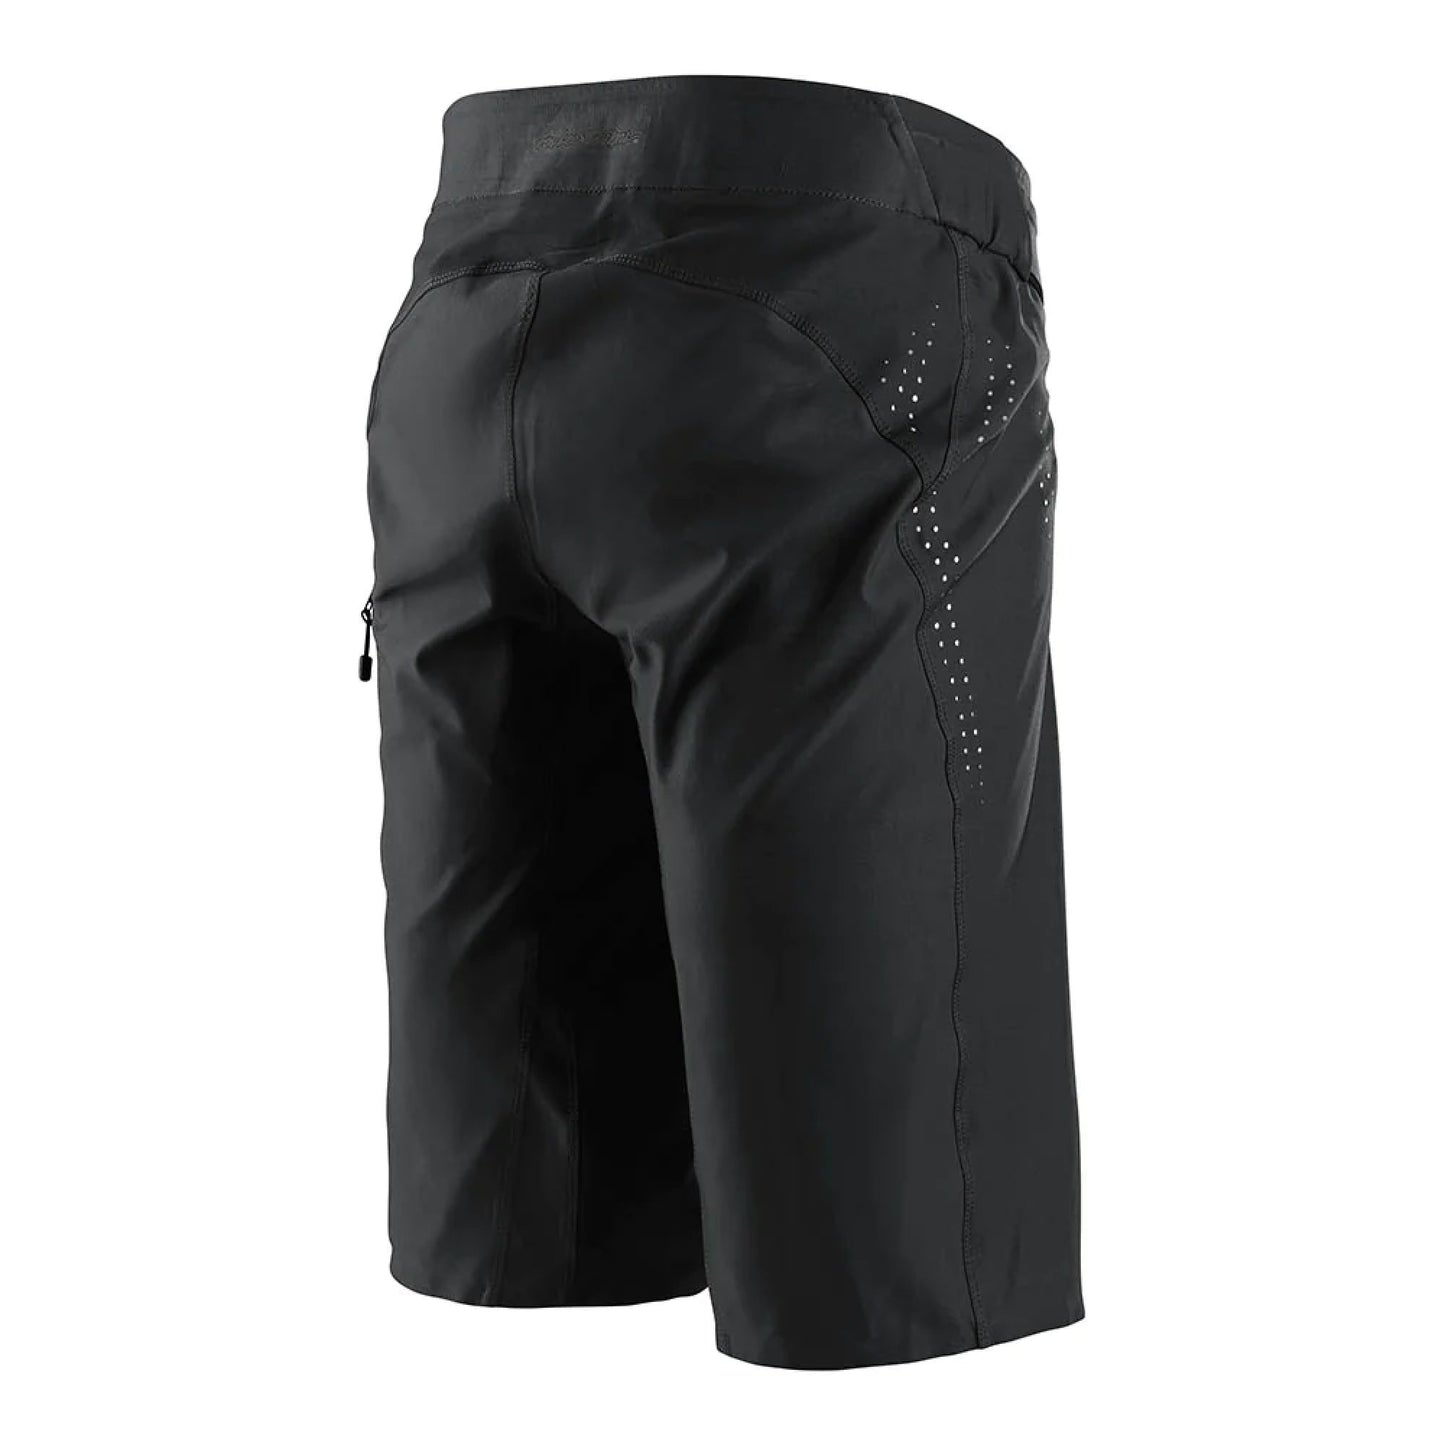 Troy Lee Designs Sprint Ultra Short Solid Black Bike Shorts